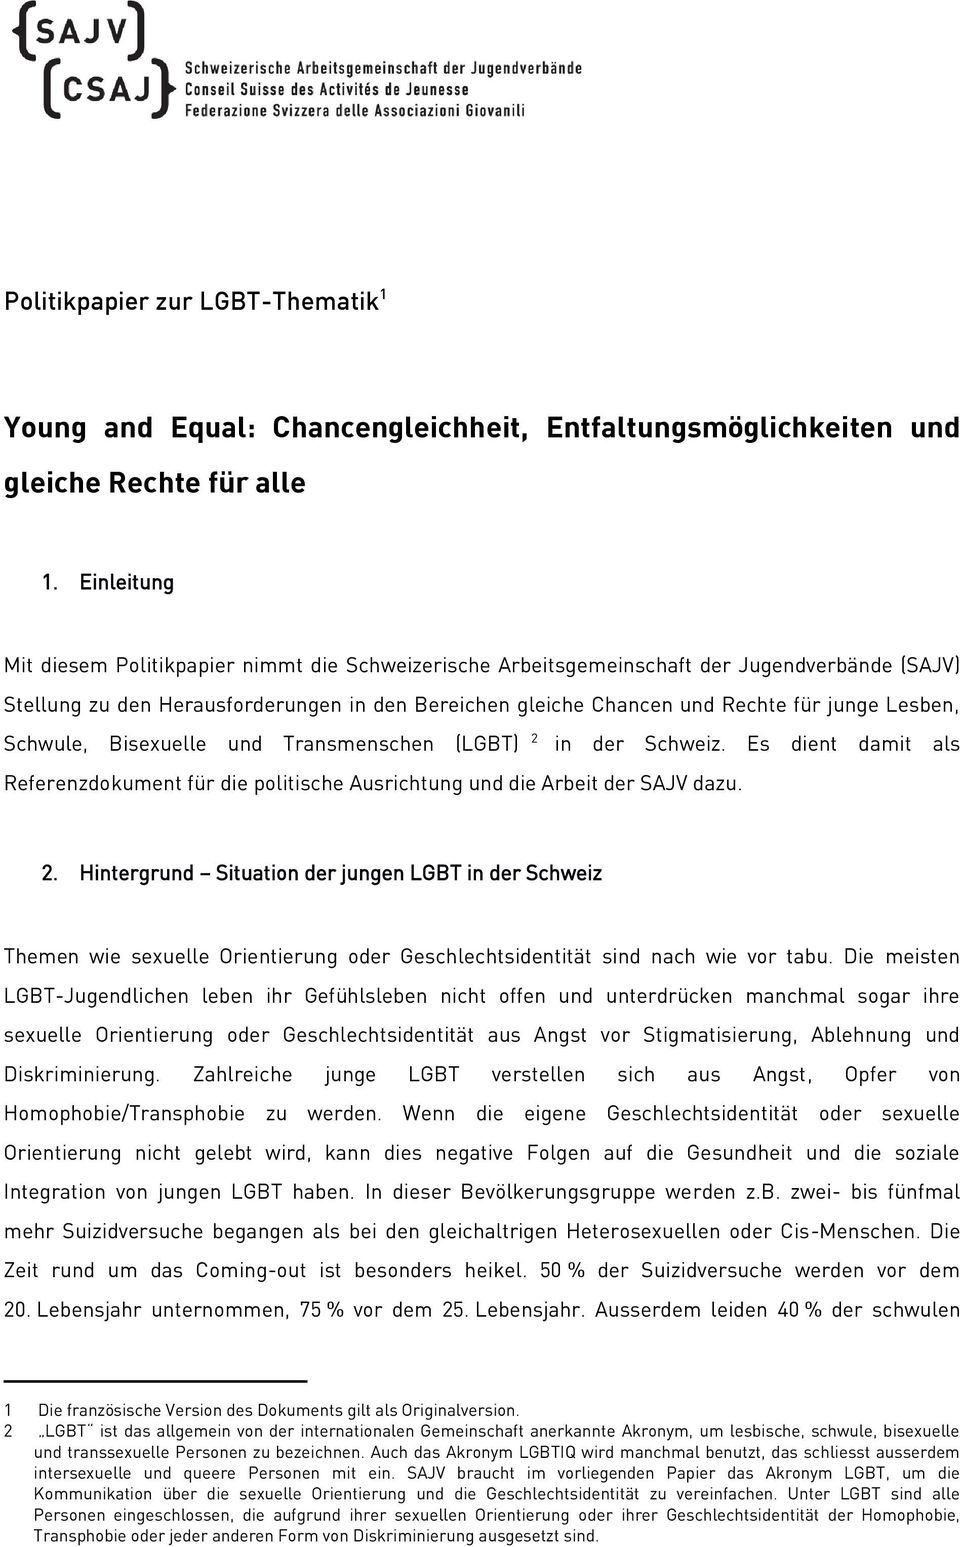 Lesben, Schwule, Bisexuelle und Transmenschen (LGBT) 2 in der Schweiz. Es dient damit als Referenzdokument für die politische Ausrichtung und die Arbeit der SAJV dazu. 2. Hintergrund Situation der jungen LGBT in der Schweiz Themen wie sexuelle Orientierung oder Geschlechtsidentität sind nach wie vor tabu.